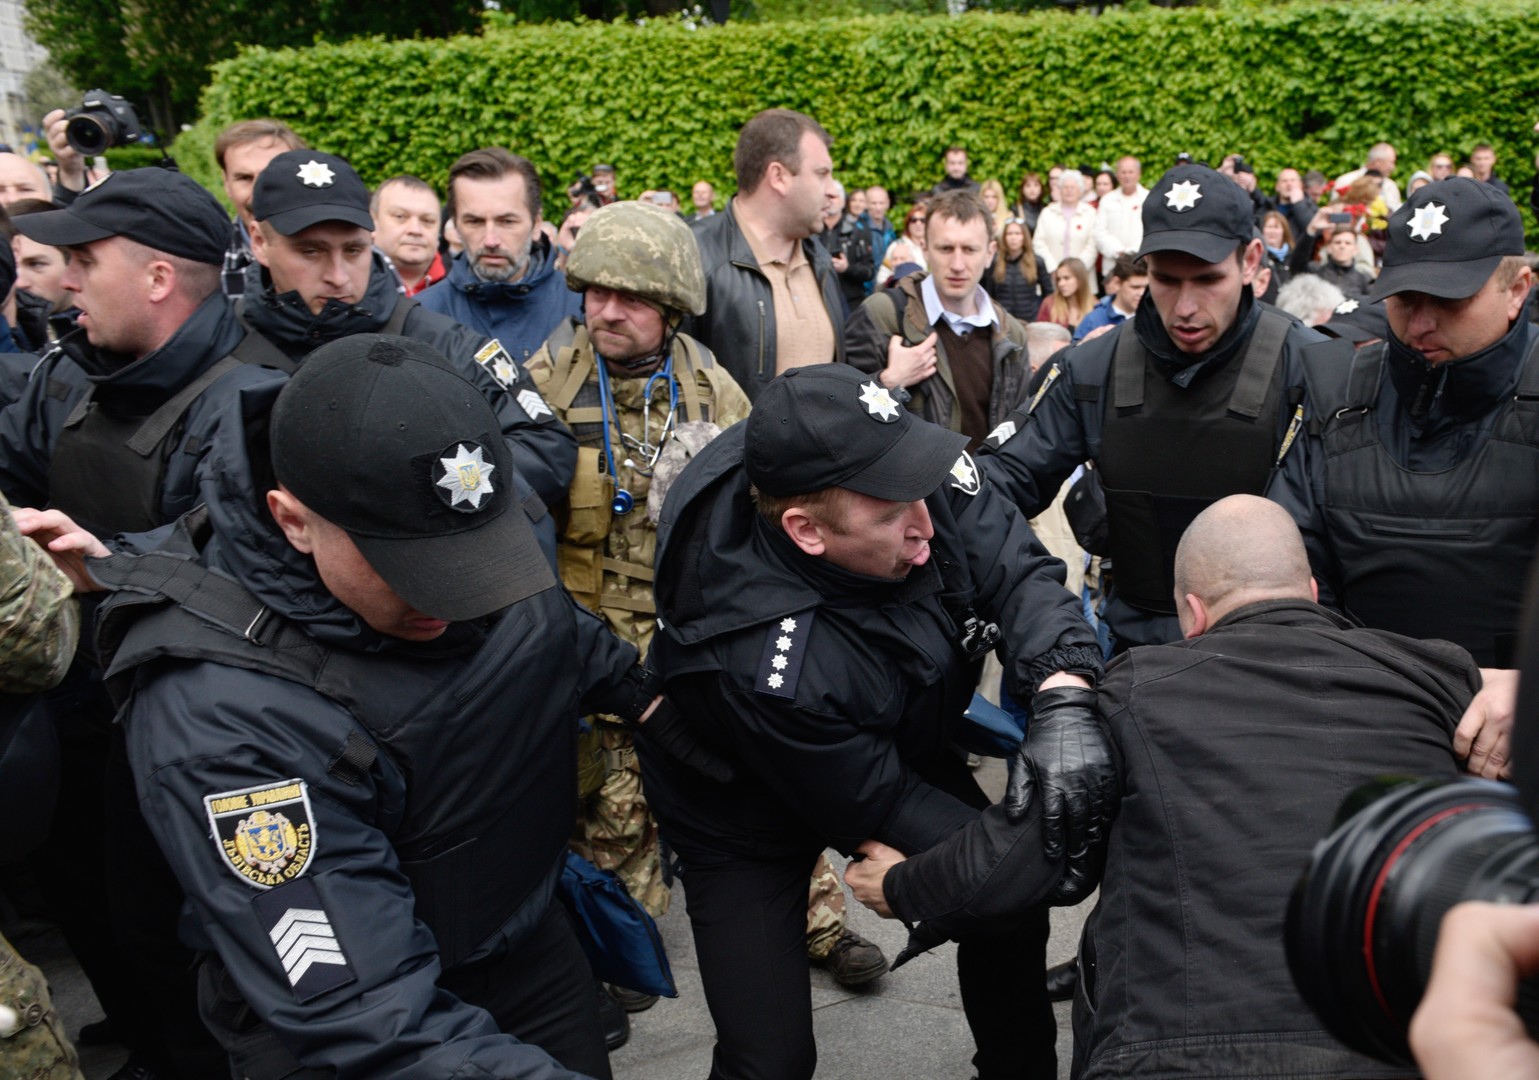 Le défilé du Régiment immortel perturbé par des nationalistes à Kiev, un policier blessé (VIDEO)